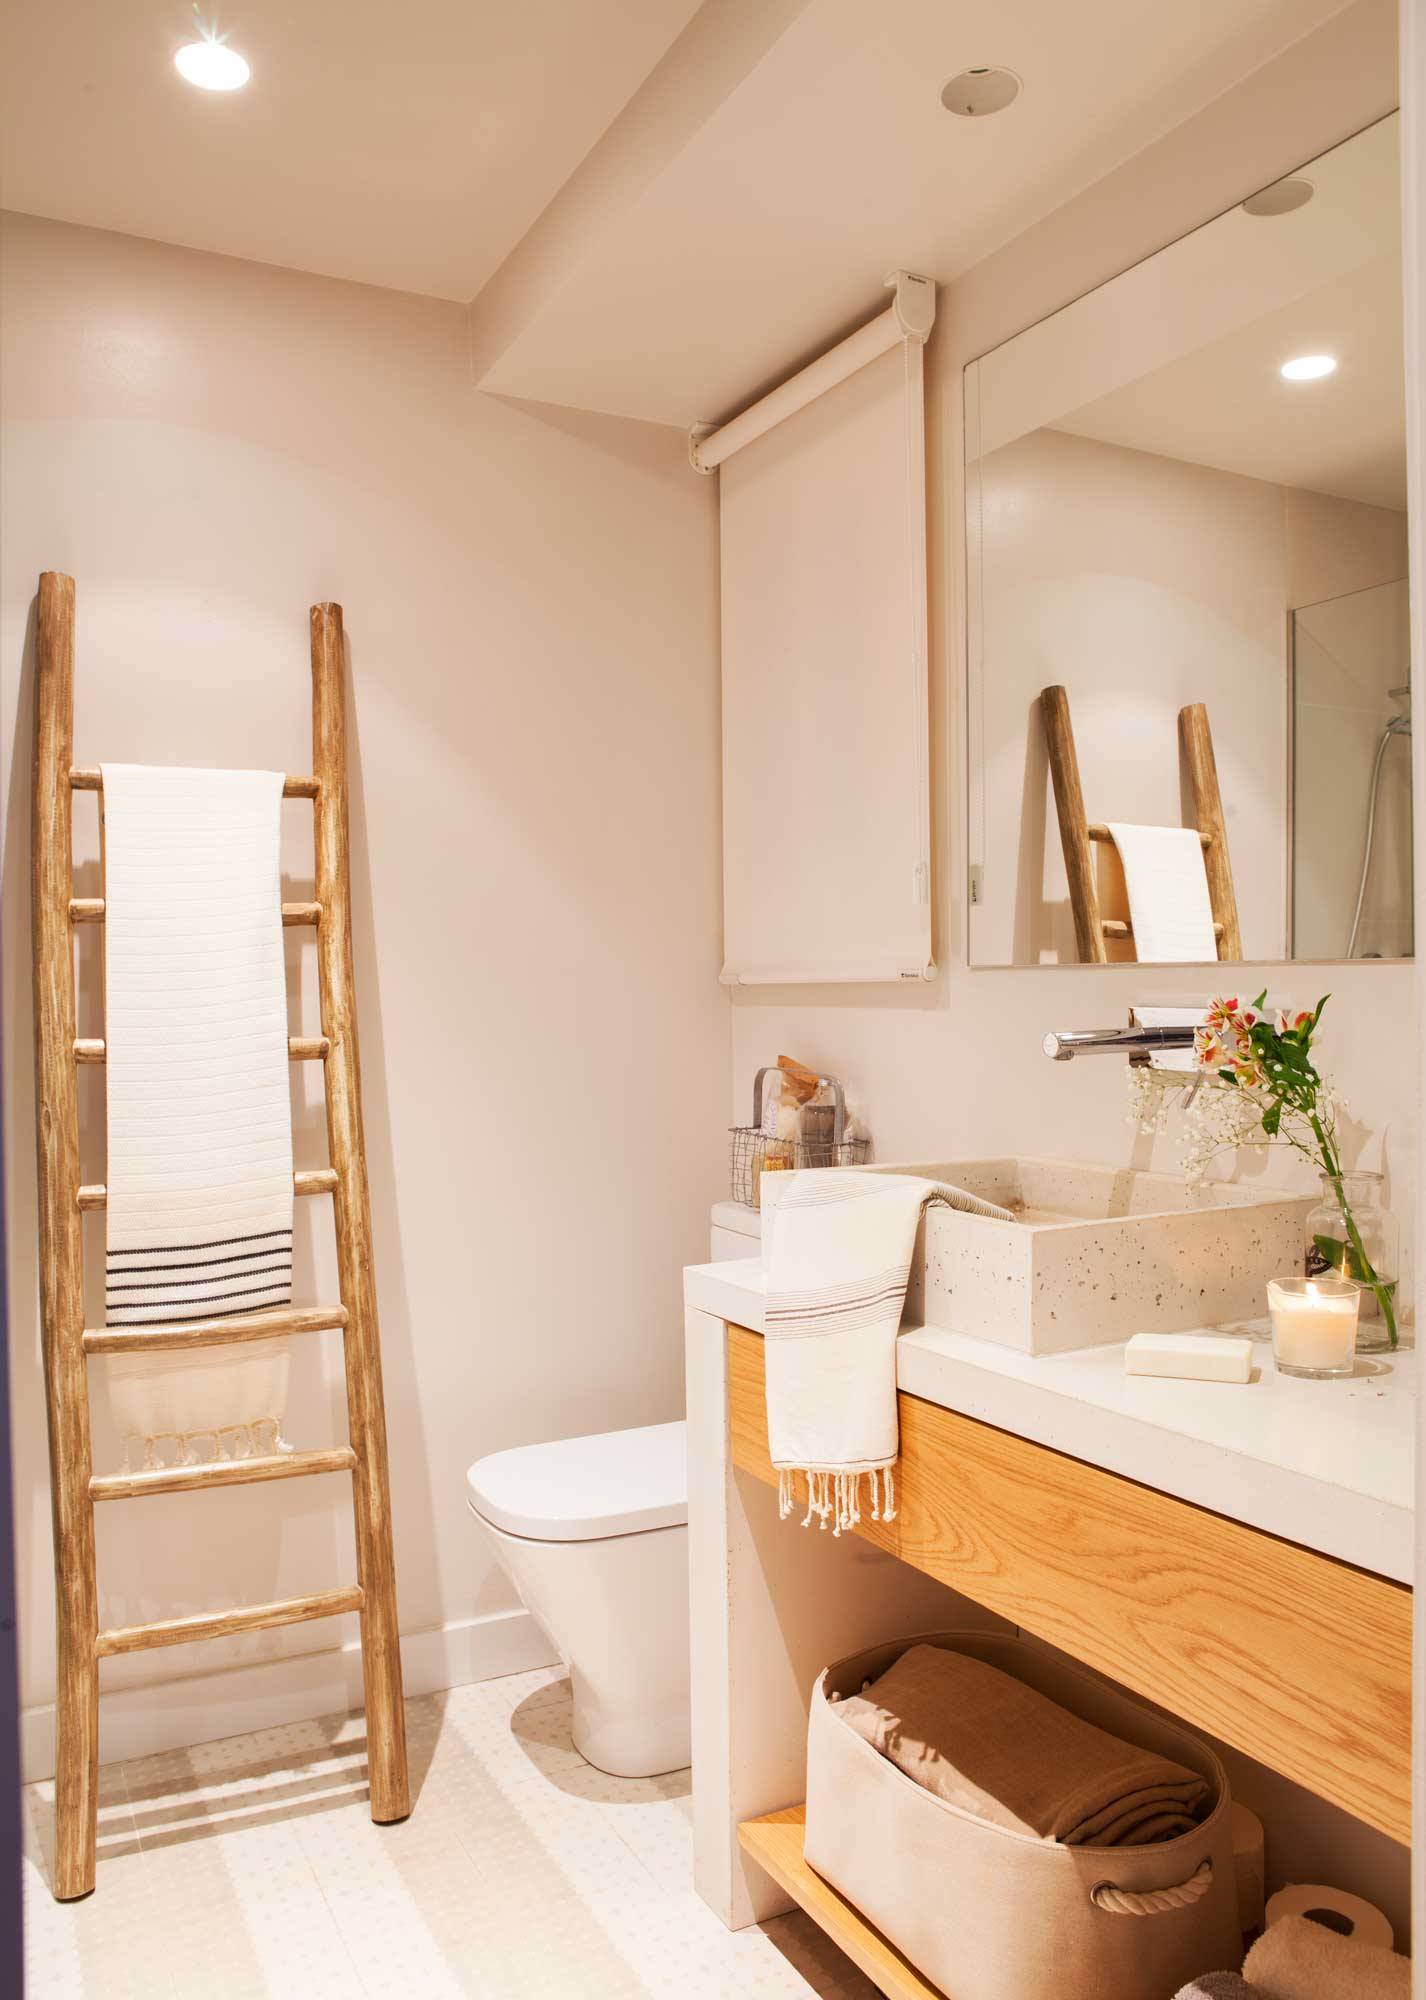 Baño pequeño con mueble bajolavabo de madera, lavamanos de gres porcelánico y escalera-toallero rústica.